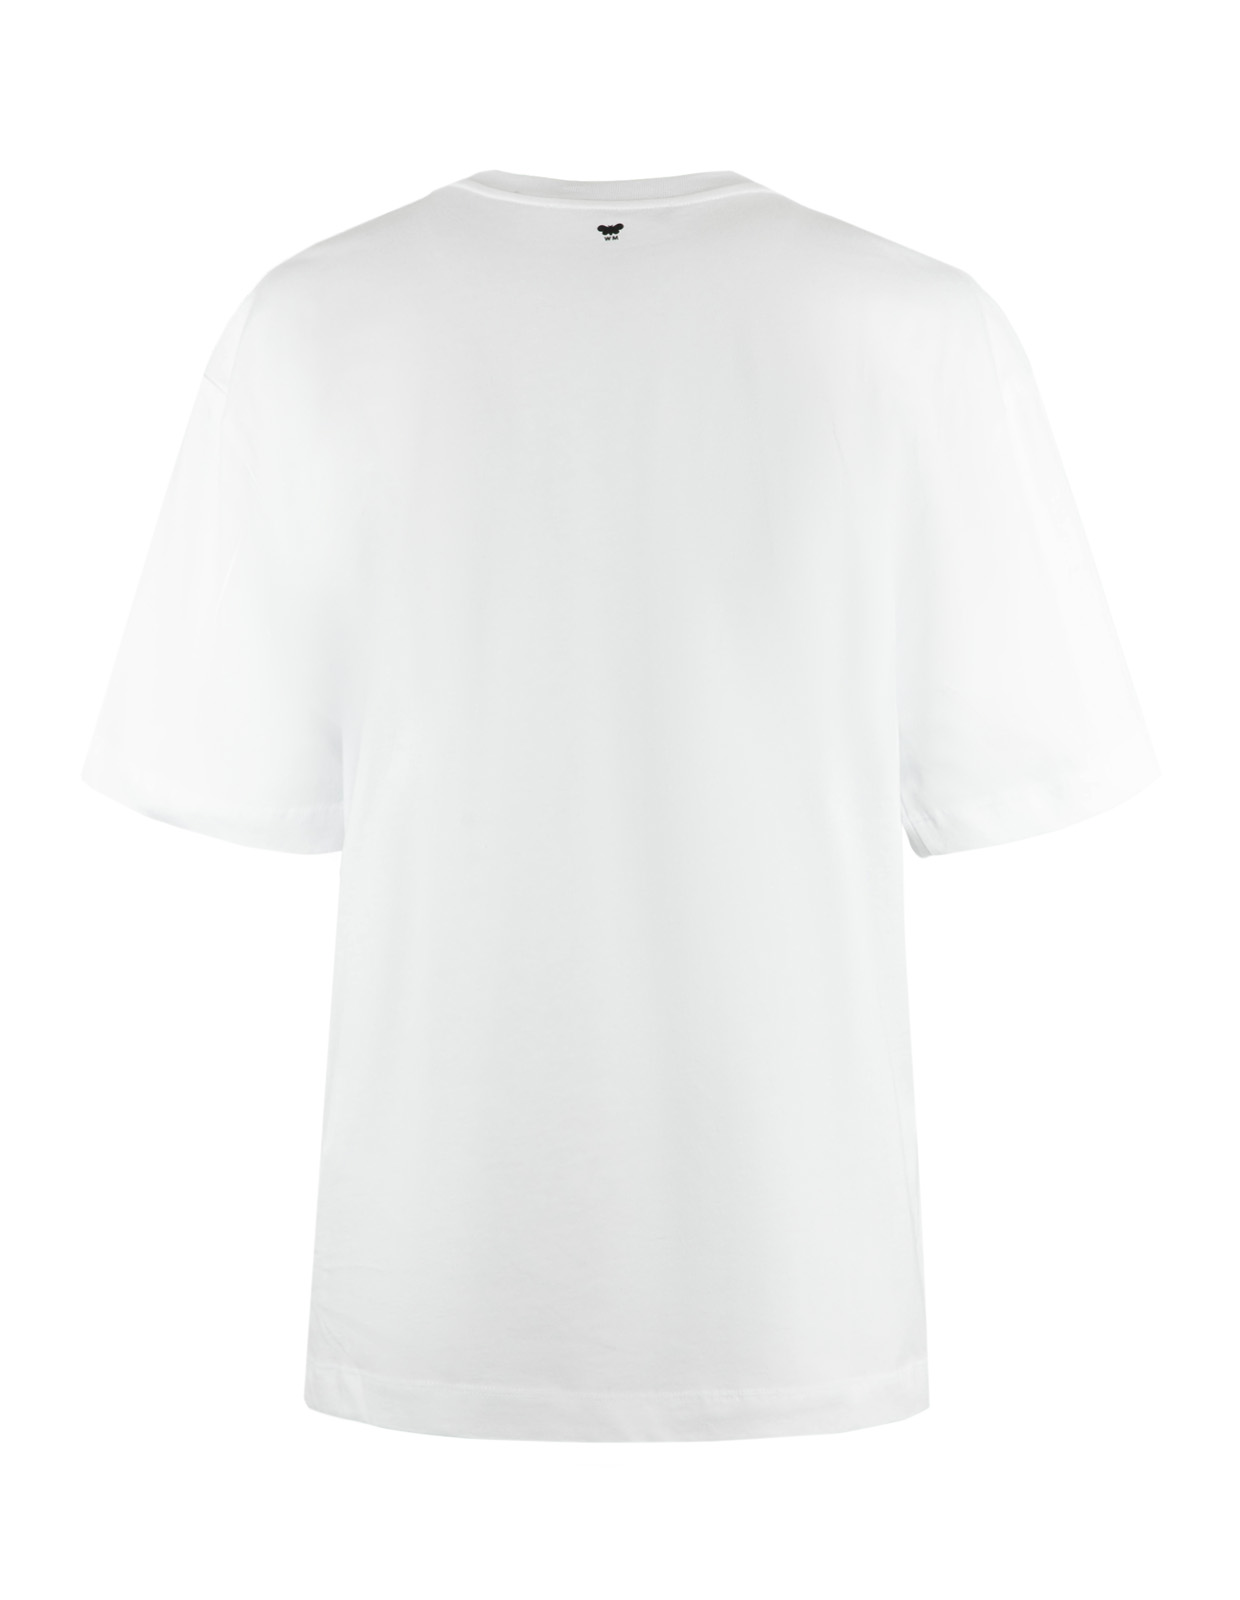 Vinterbo T-Shirt Vit